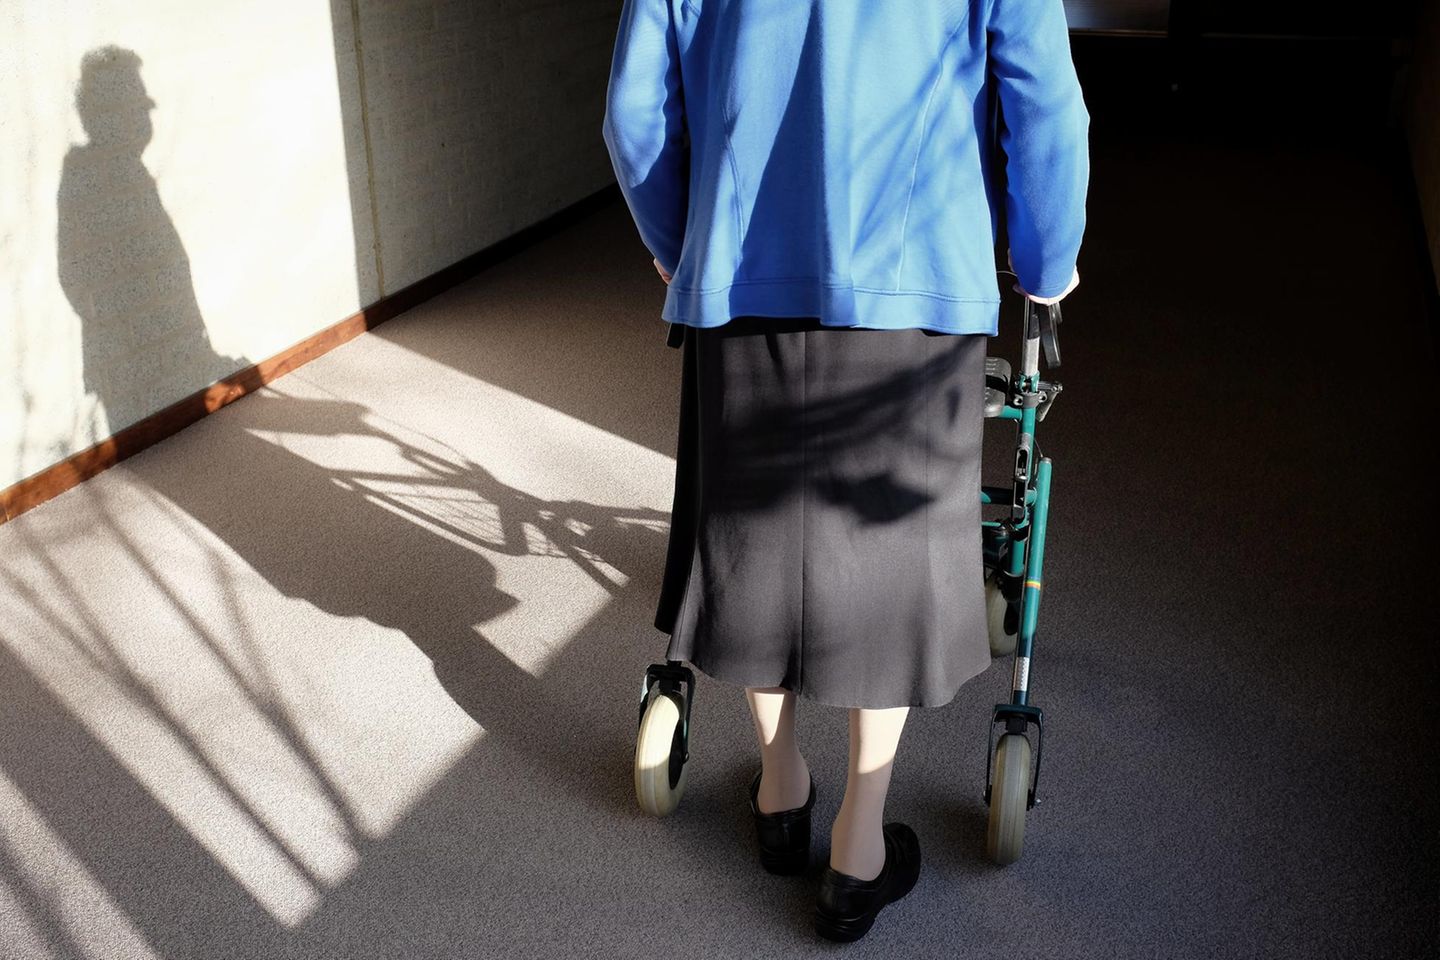 Schockierendes Urteil: Behinderte Seniorin aus Wohnung geschmissen